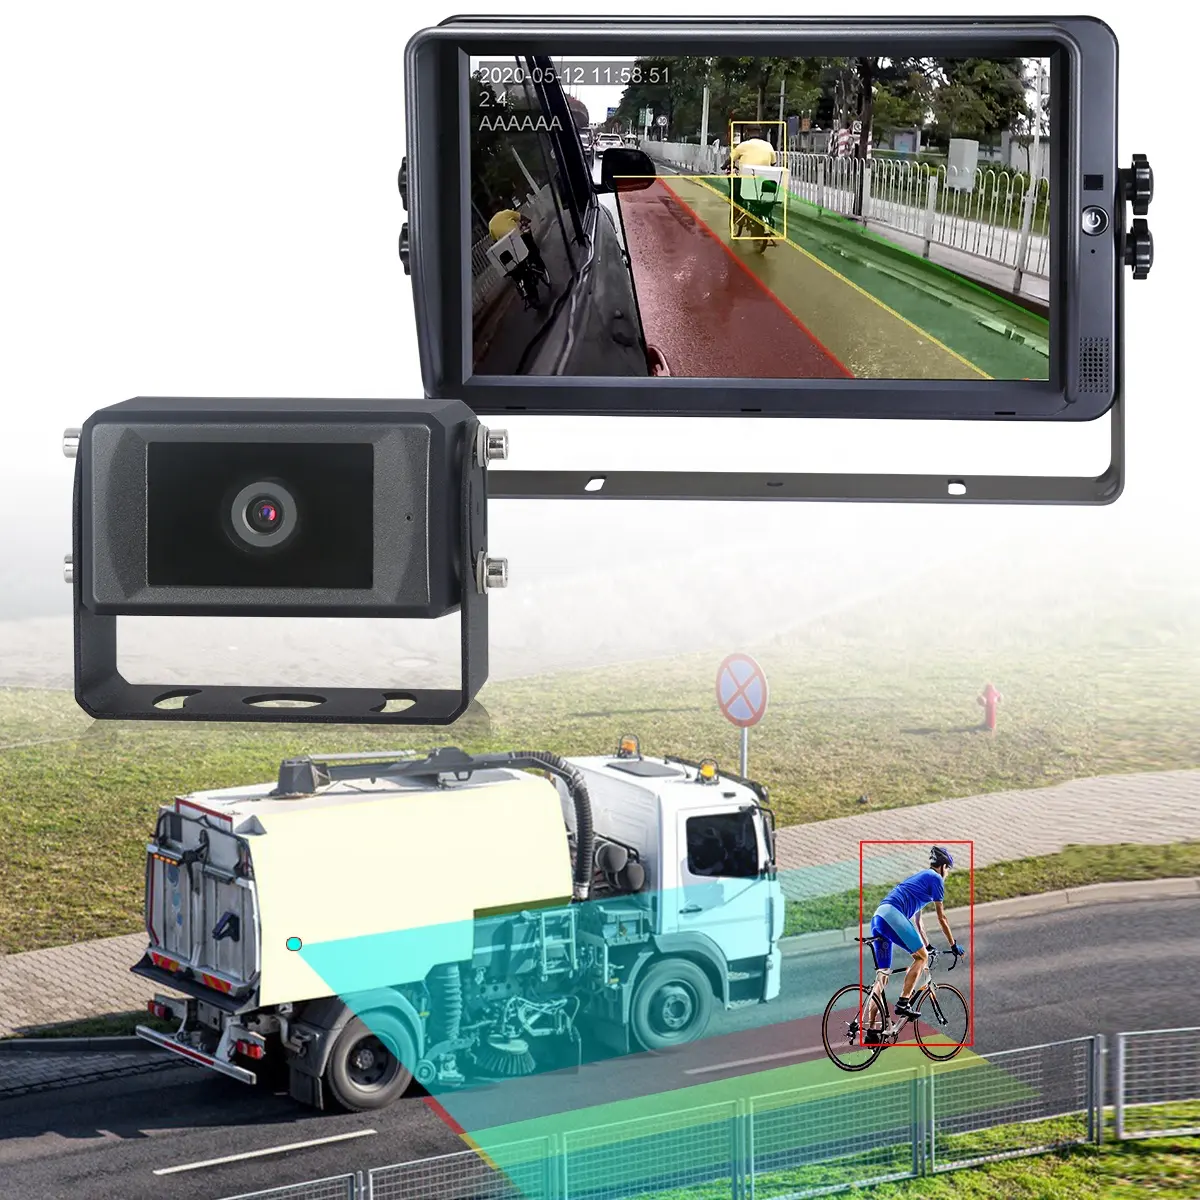 Stonkam กล้องเตือนภัยถอยรถขนาดใหญ่สำหรับยานพาหนะคนเดินเท้า & การตรวจจับรถกล้อง AI